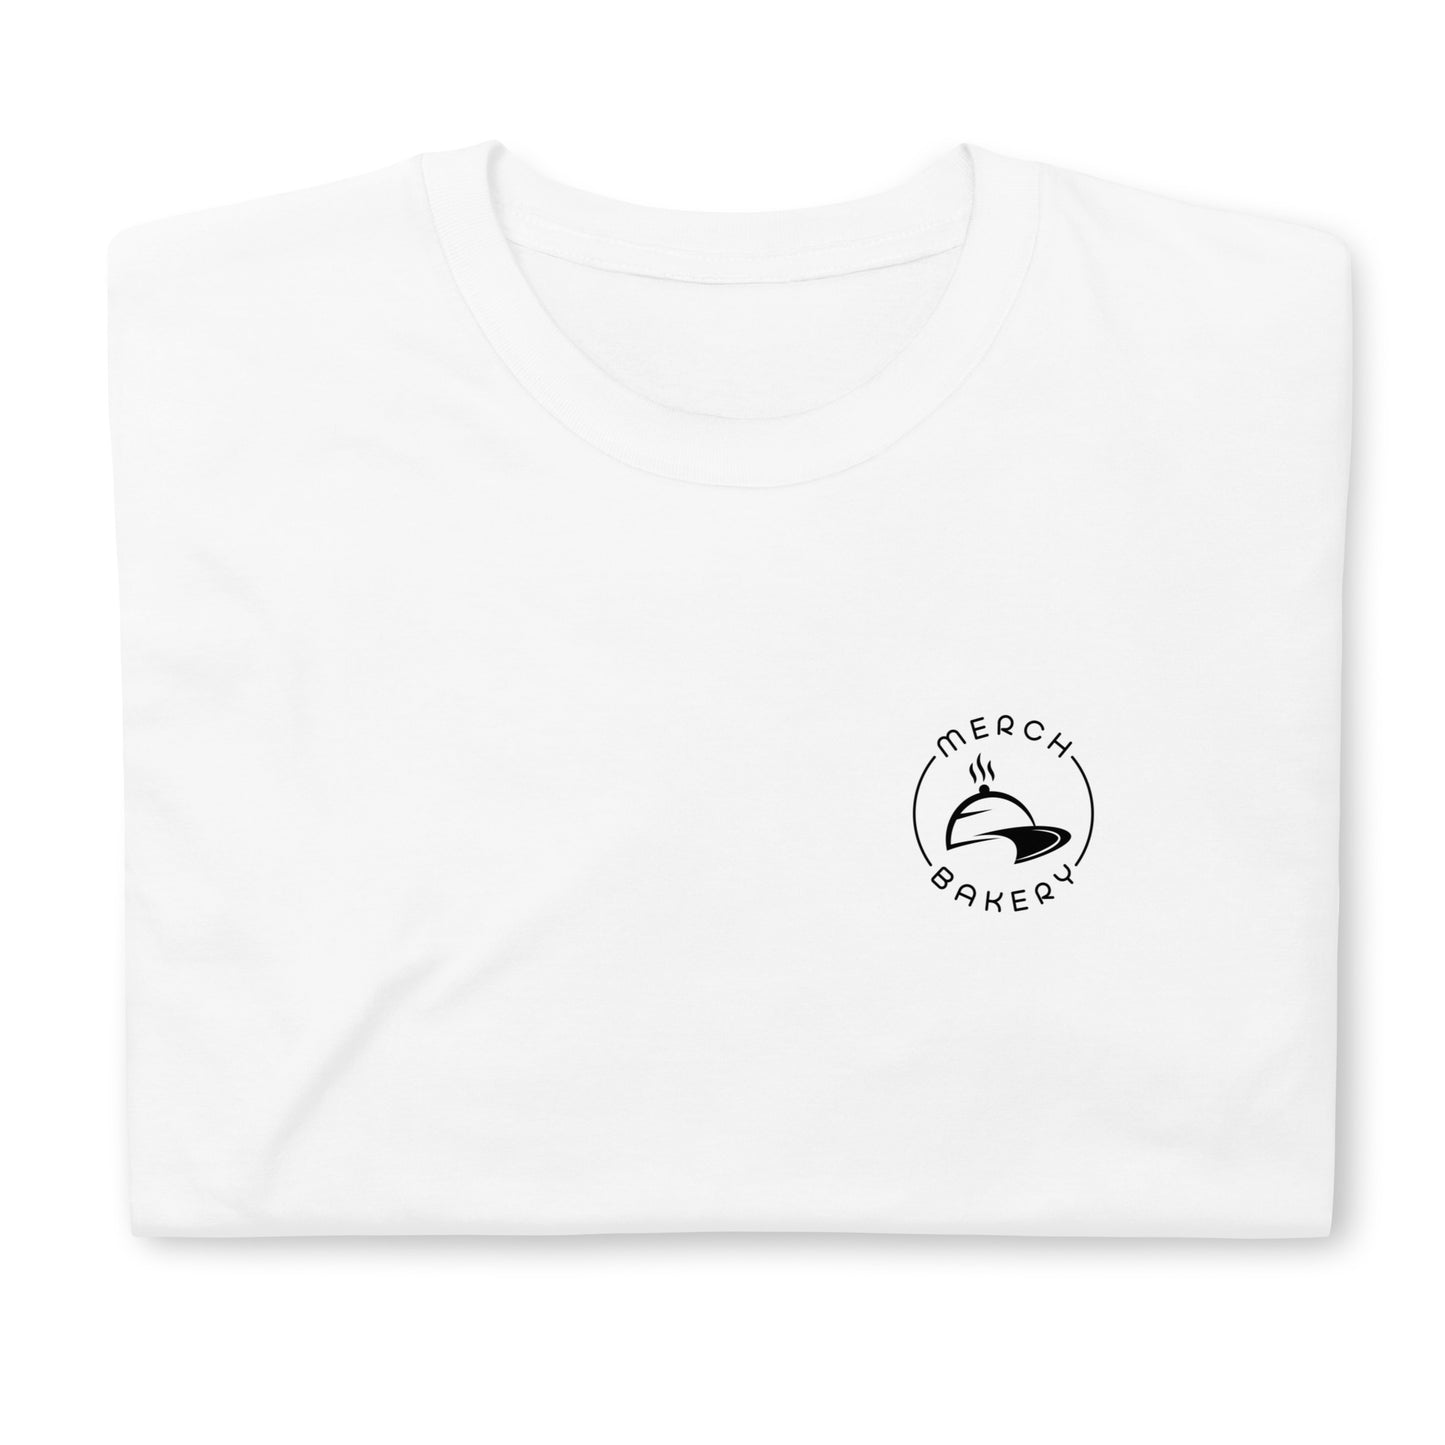 LOGO Rnd: Offizielles MERCH BAKERY T-Shirt - Unisex